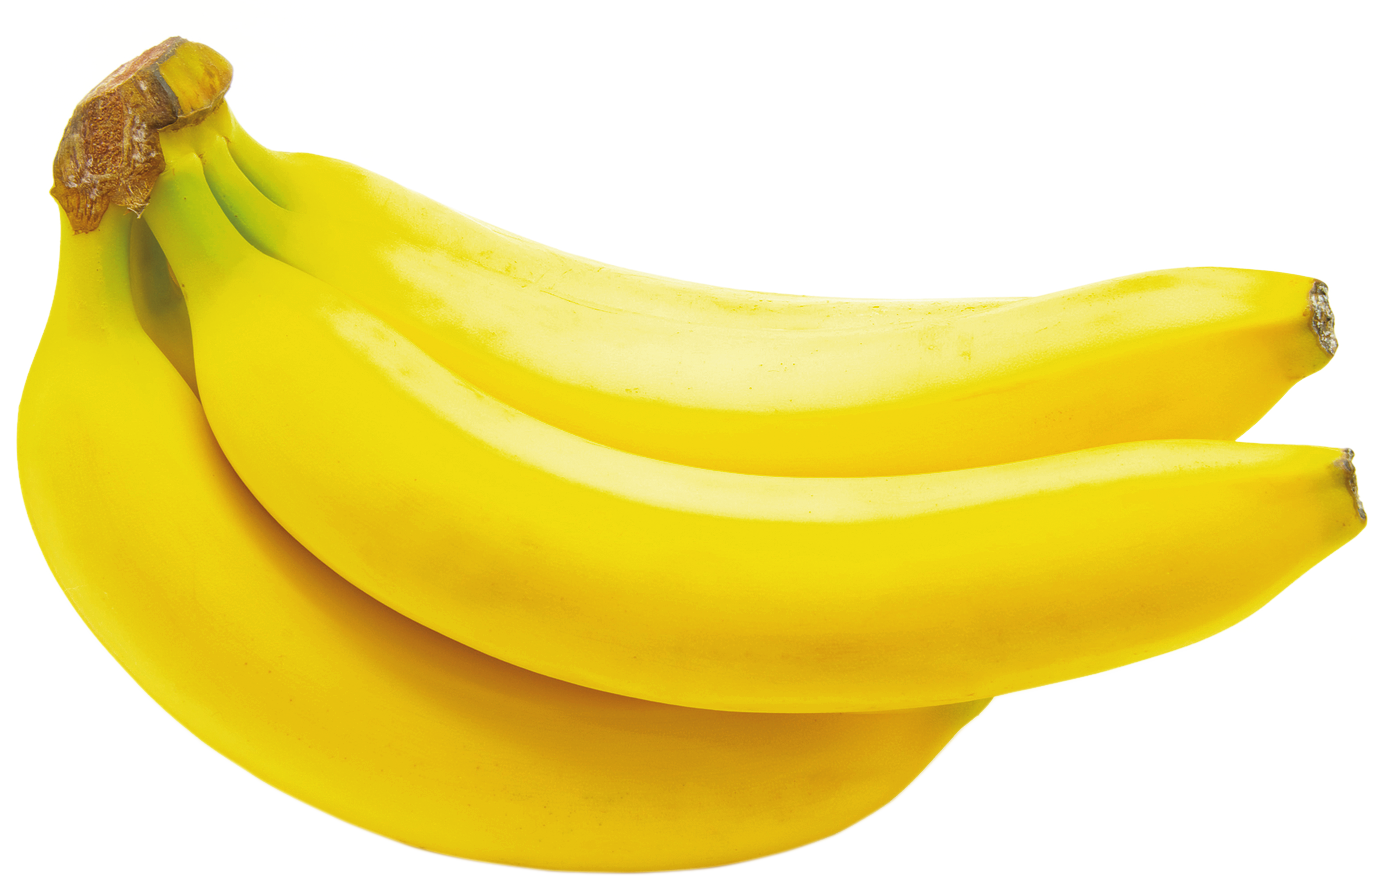 Banana PNG - 28054